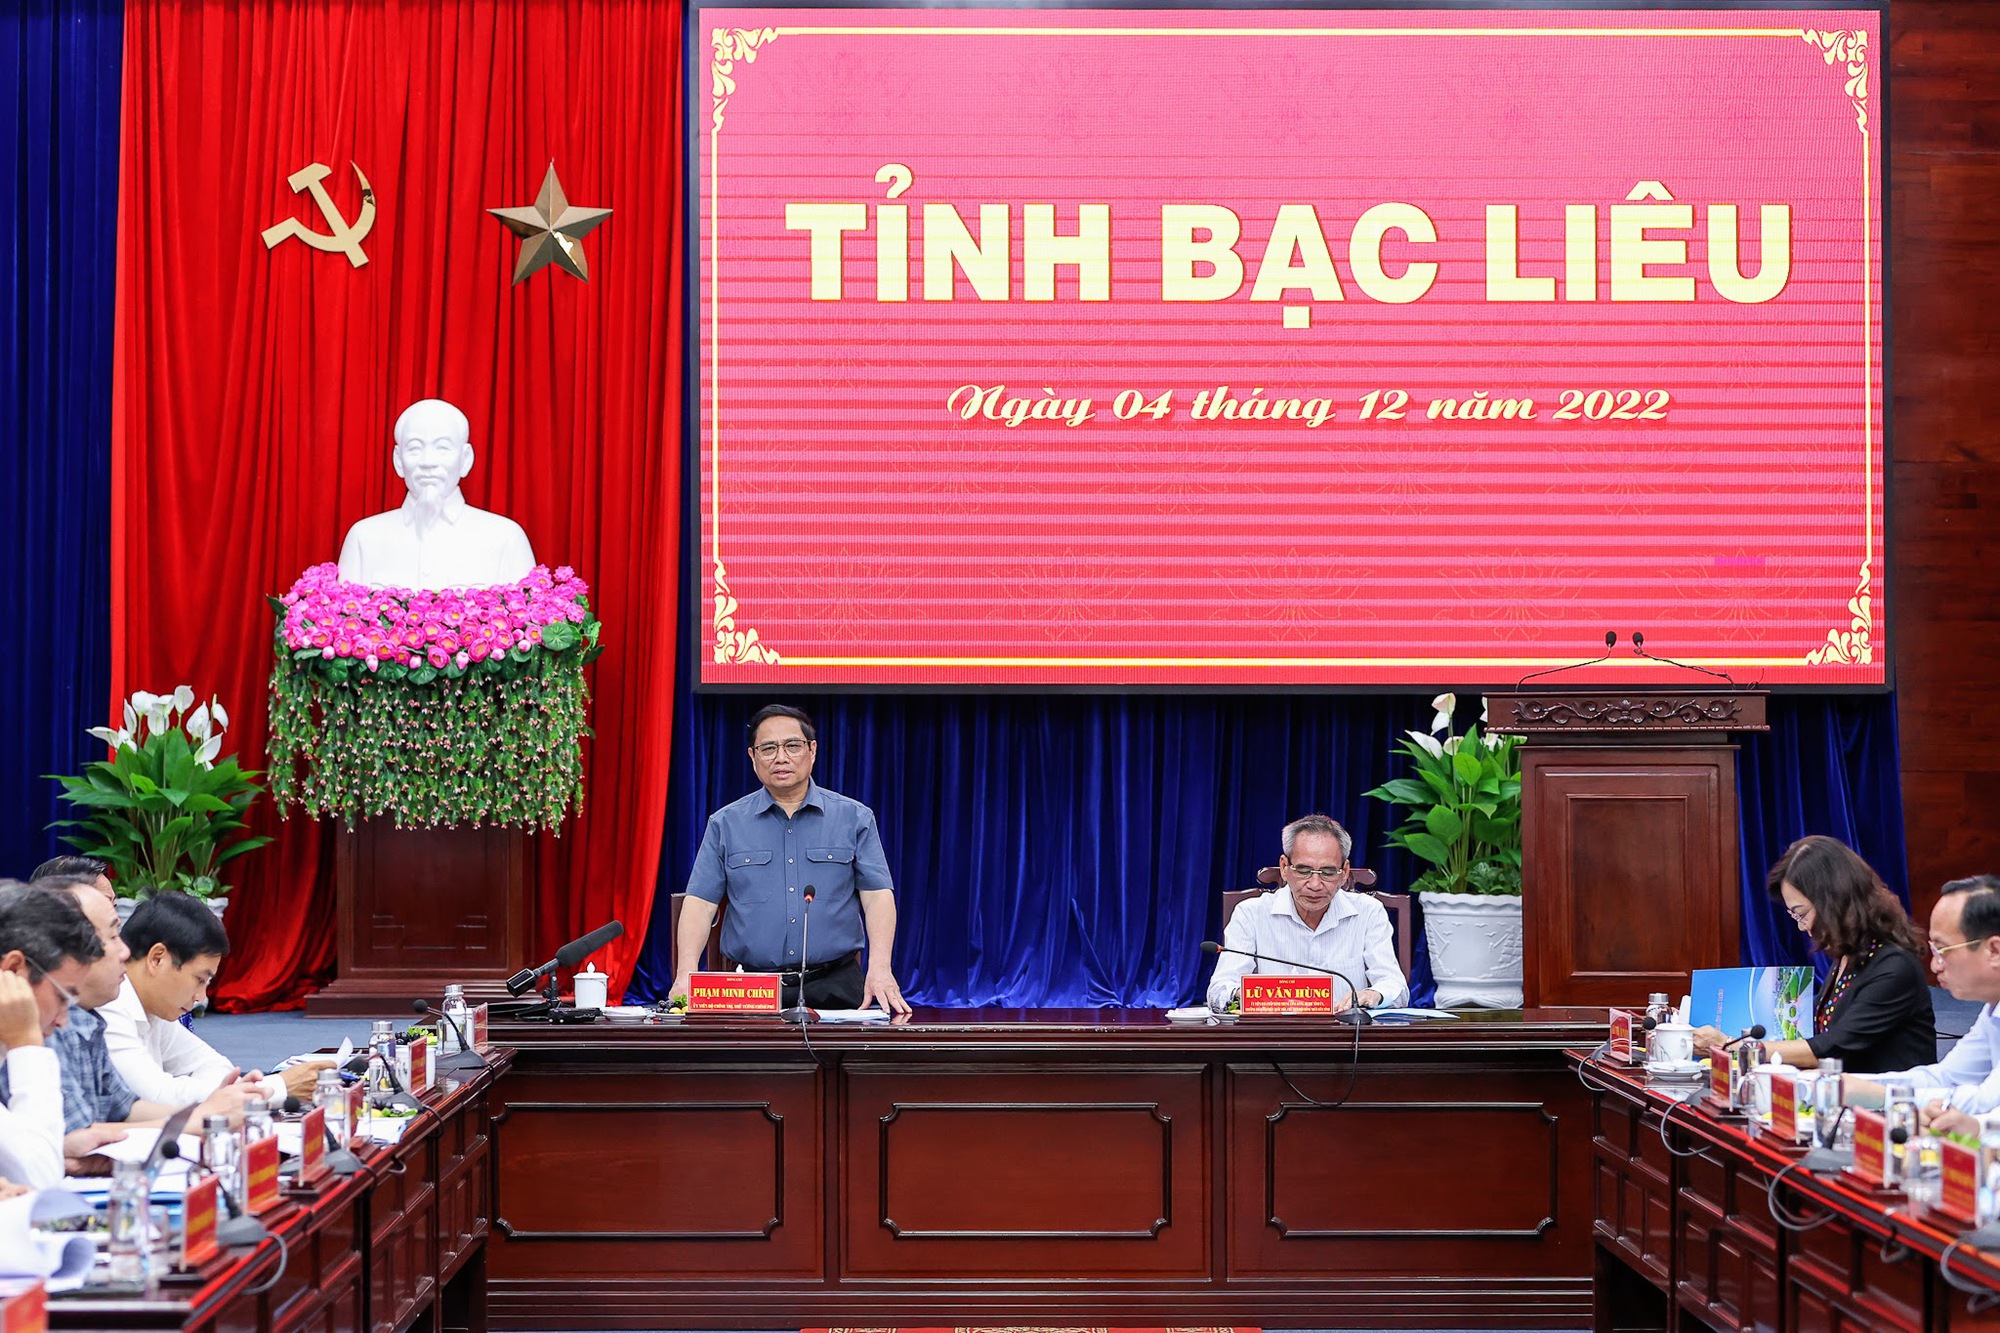 Thủ tướng Phạm Minh Chính: Phân loại doanh nghiệp, ngân hàng để nâng hạn mức tín dụng phù hợp, hiệu quả - Ảnh 1.